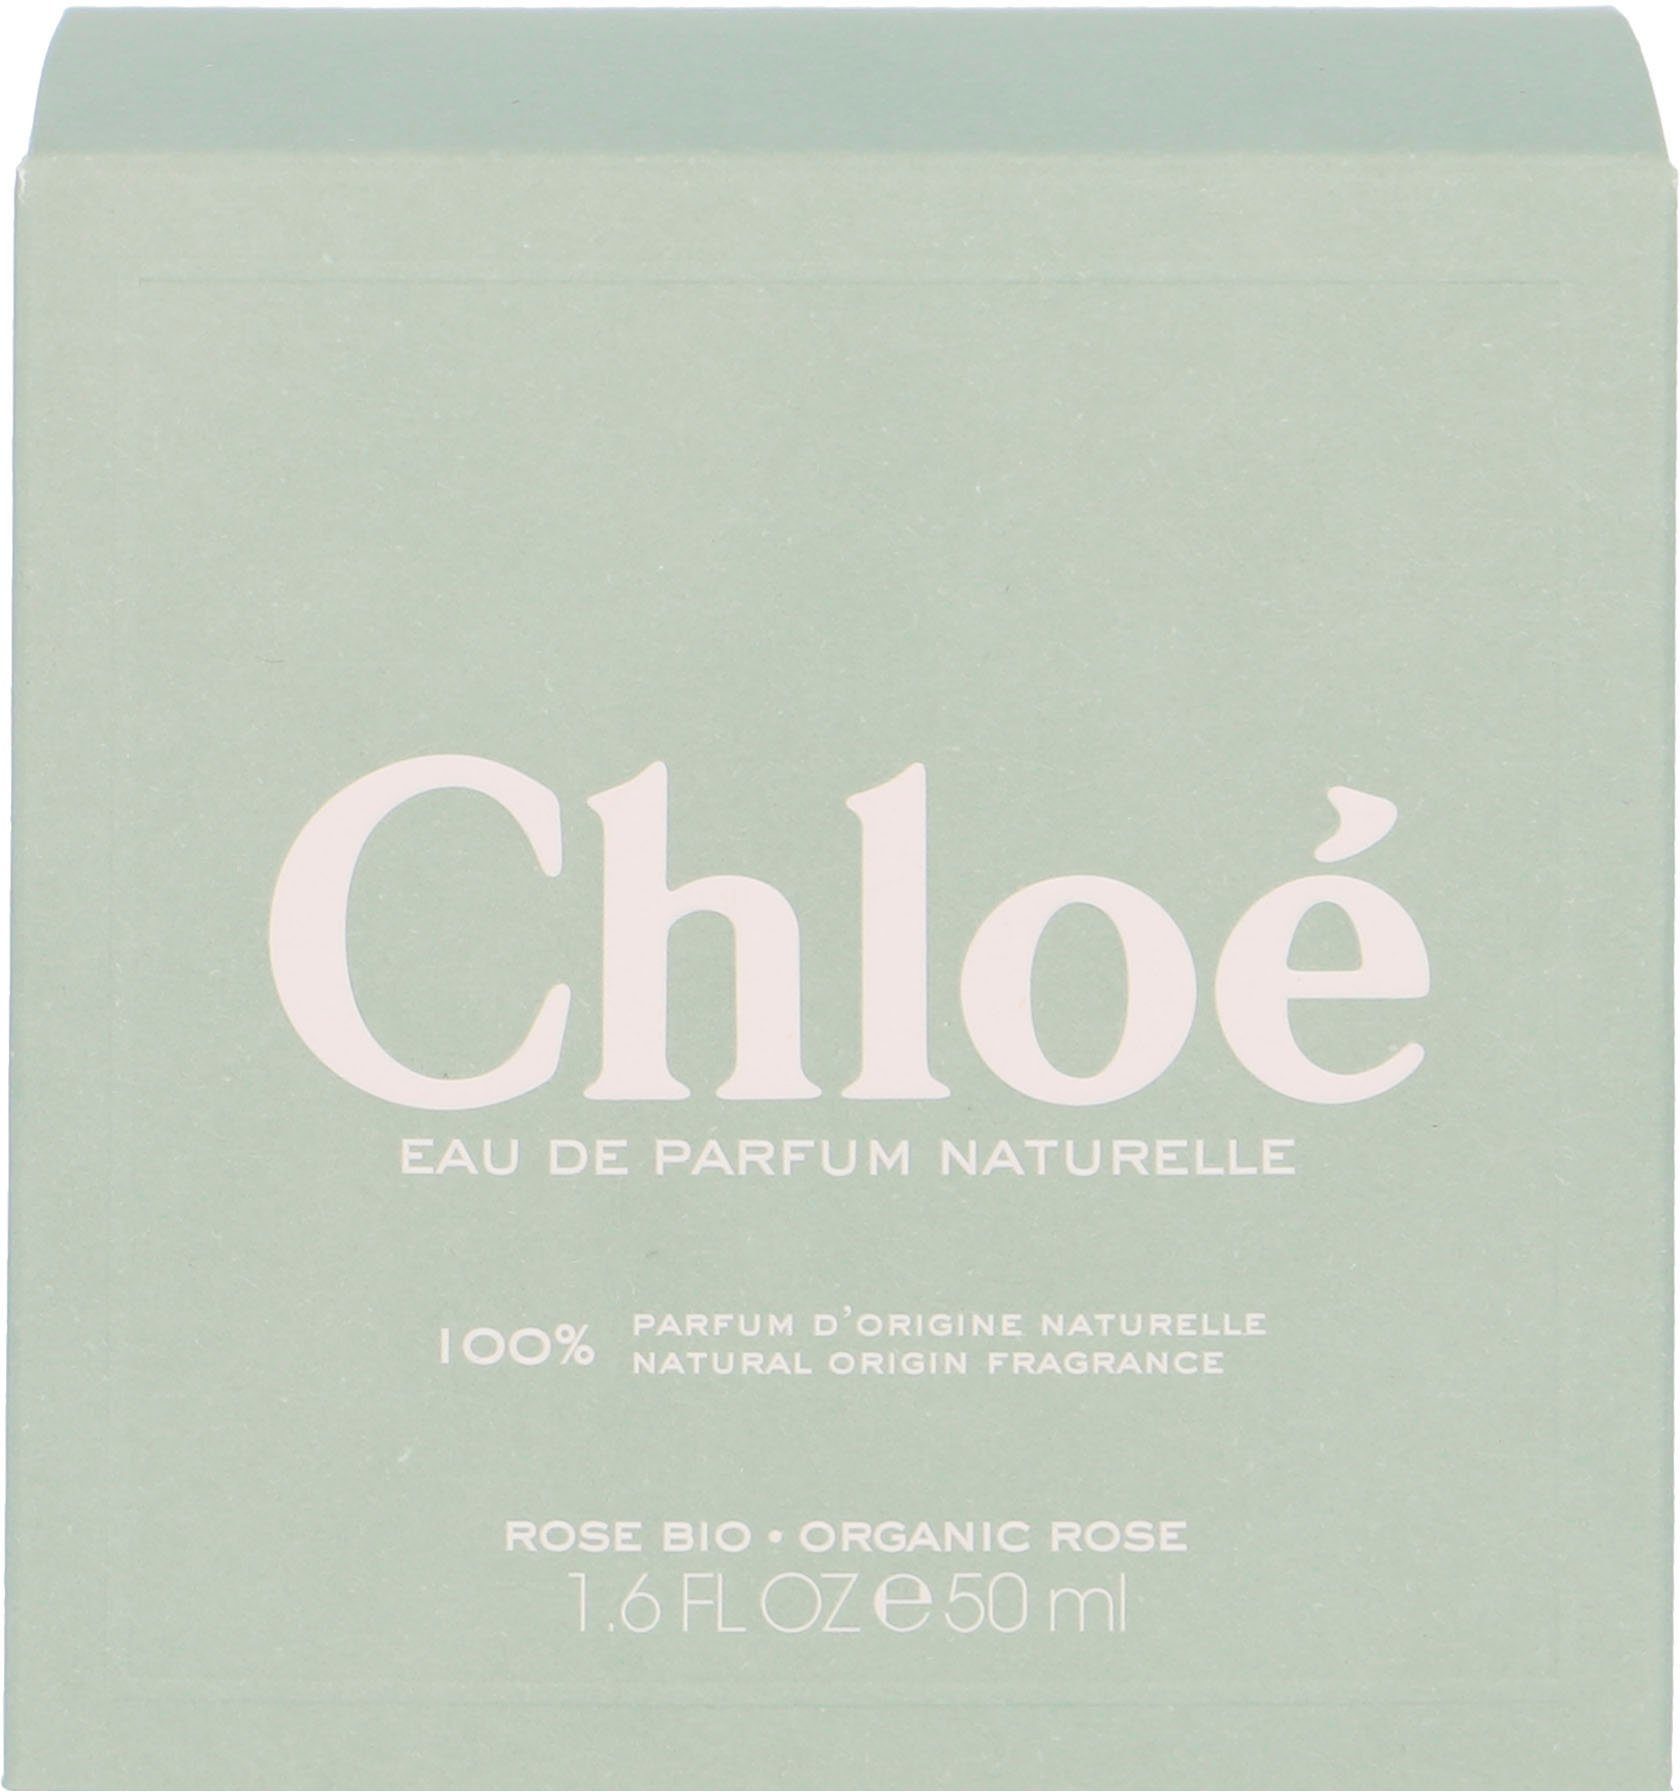 Signature Parfum Naturelle Eau Chloé de